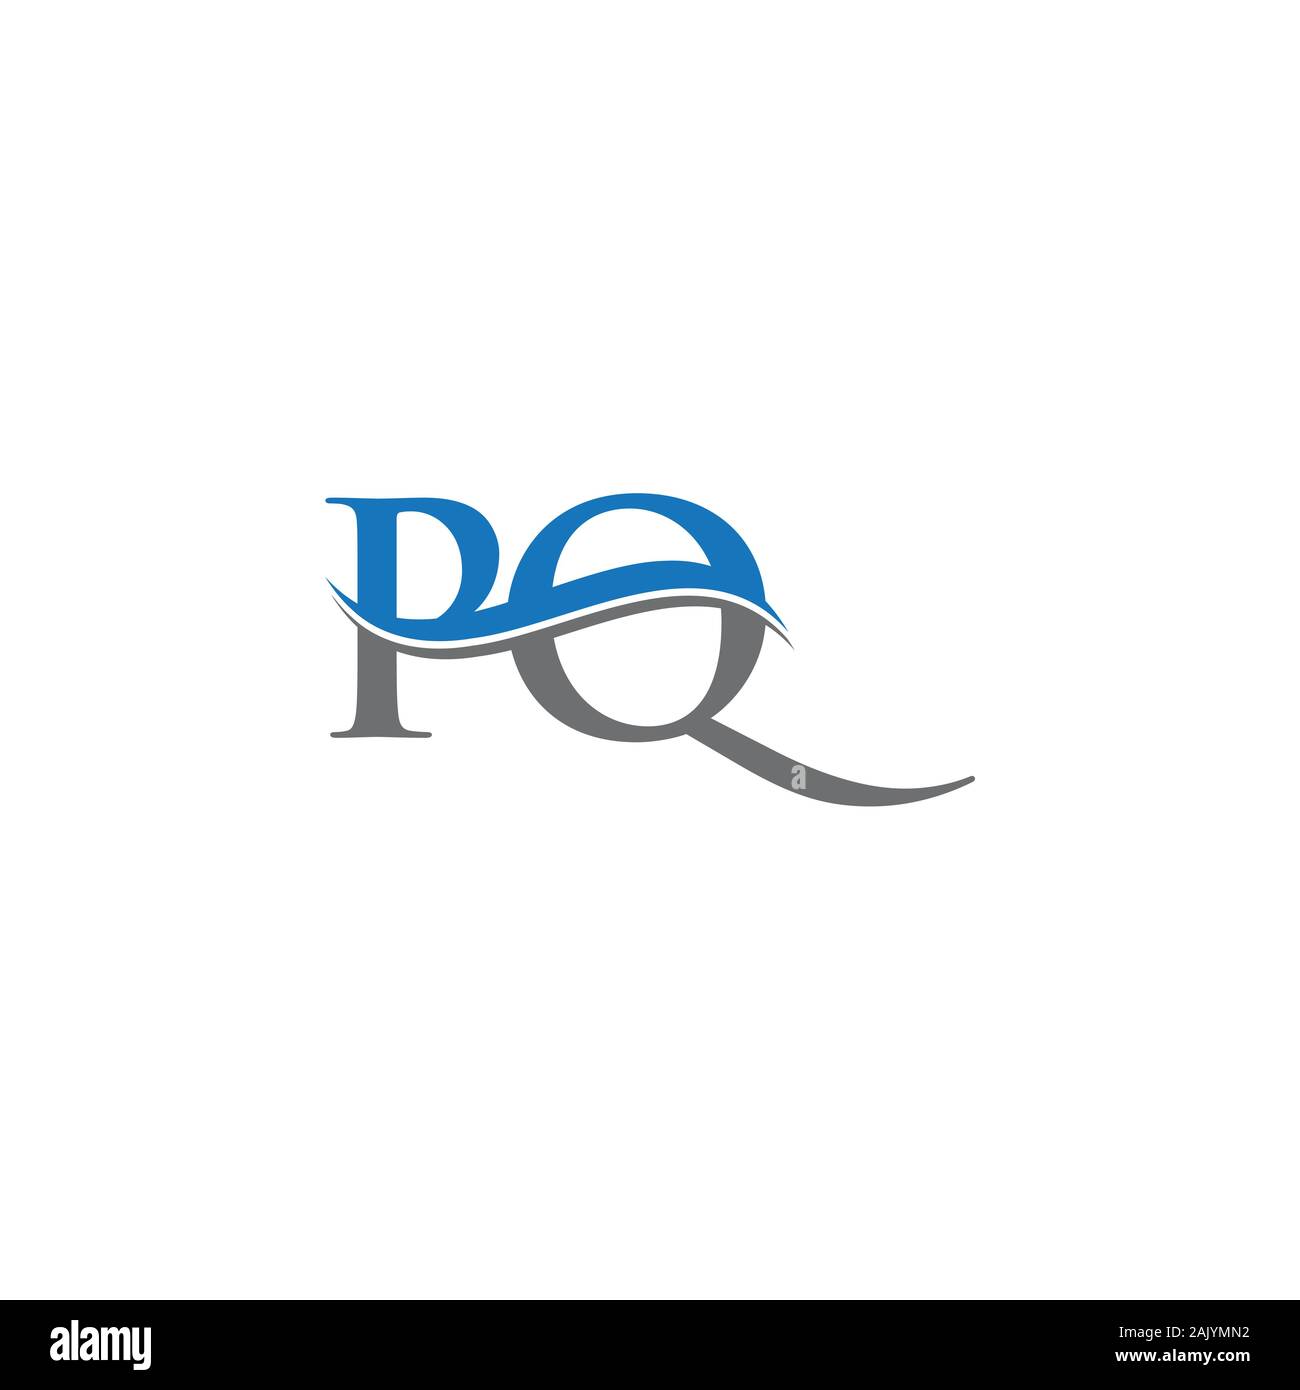 Monogram Logo Letter Pq Sliced Stock Vector (Royalty Free